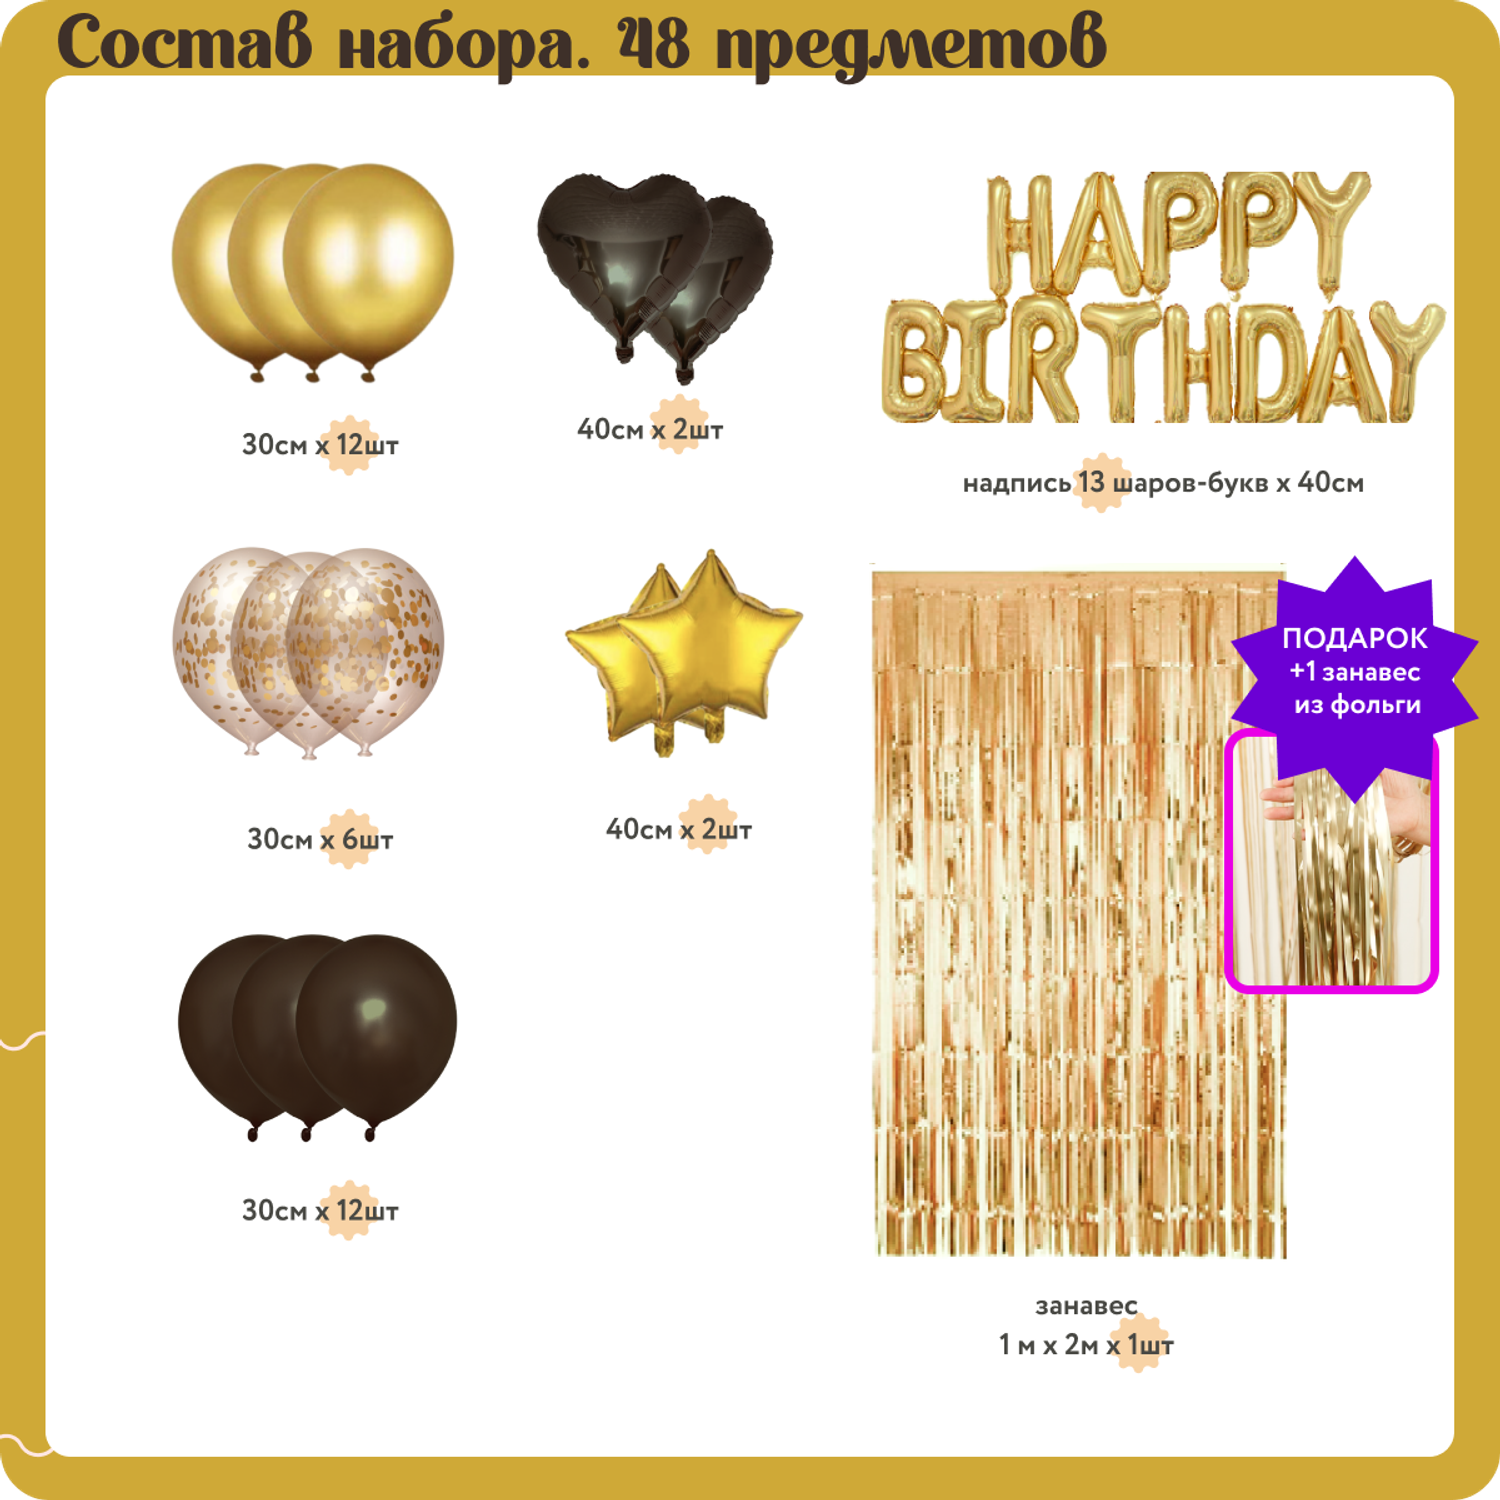 Воздушные шары набор Мишины шарики для фотозоны на день рождения с фольгированными буквами Happy Birthday - фото 5